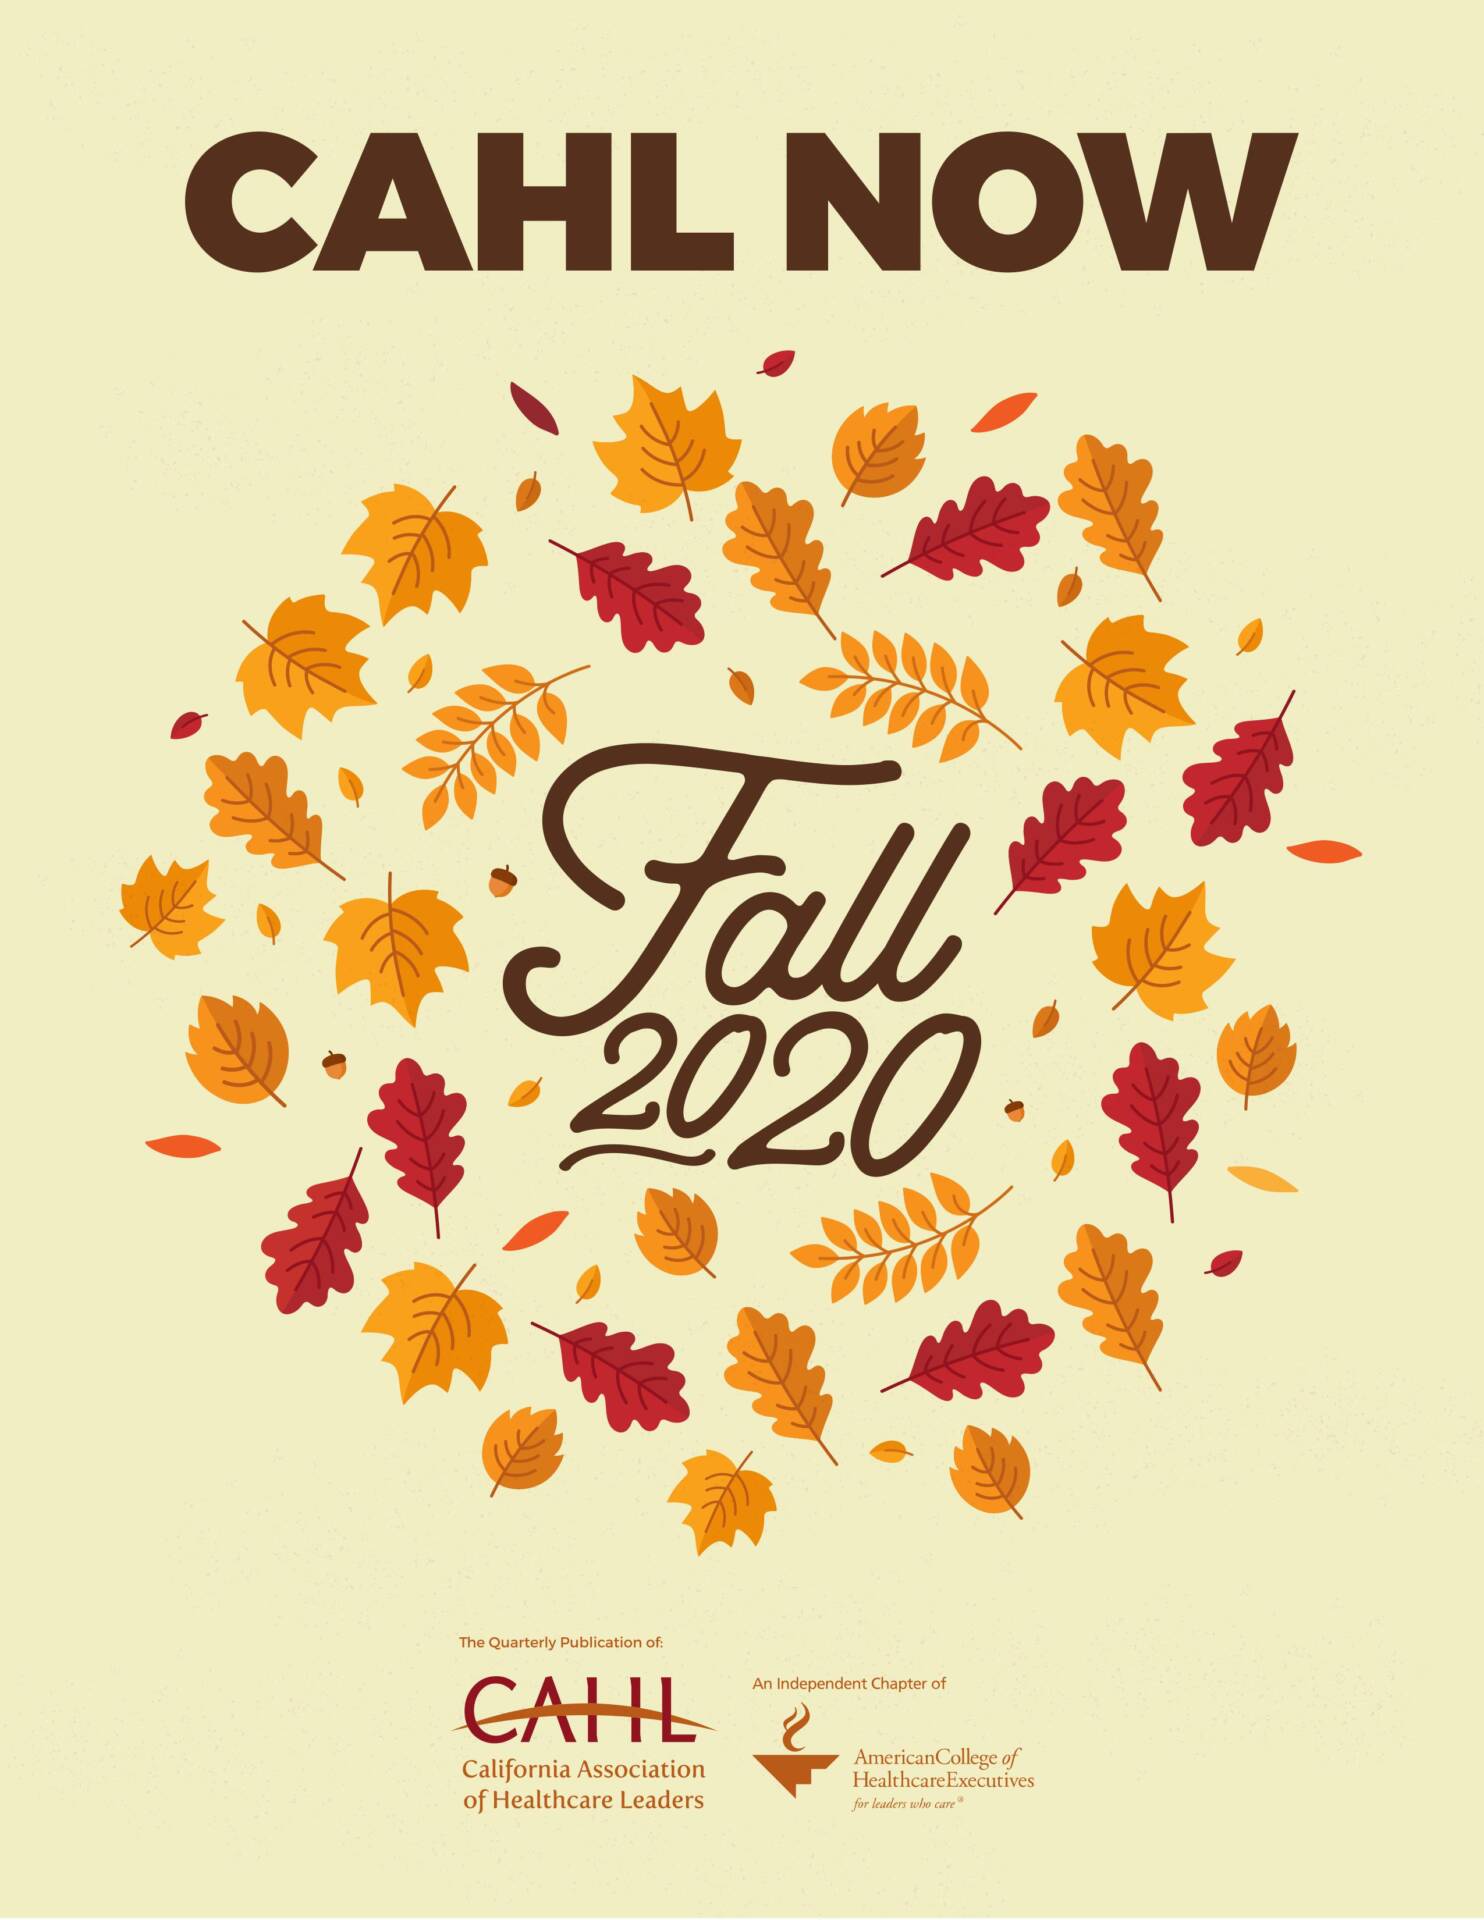 Fall 2020 Newsletter